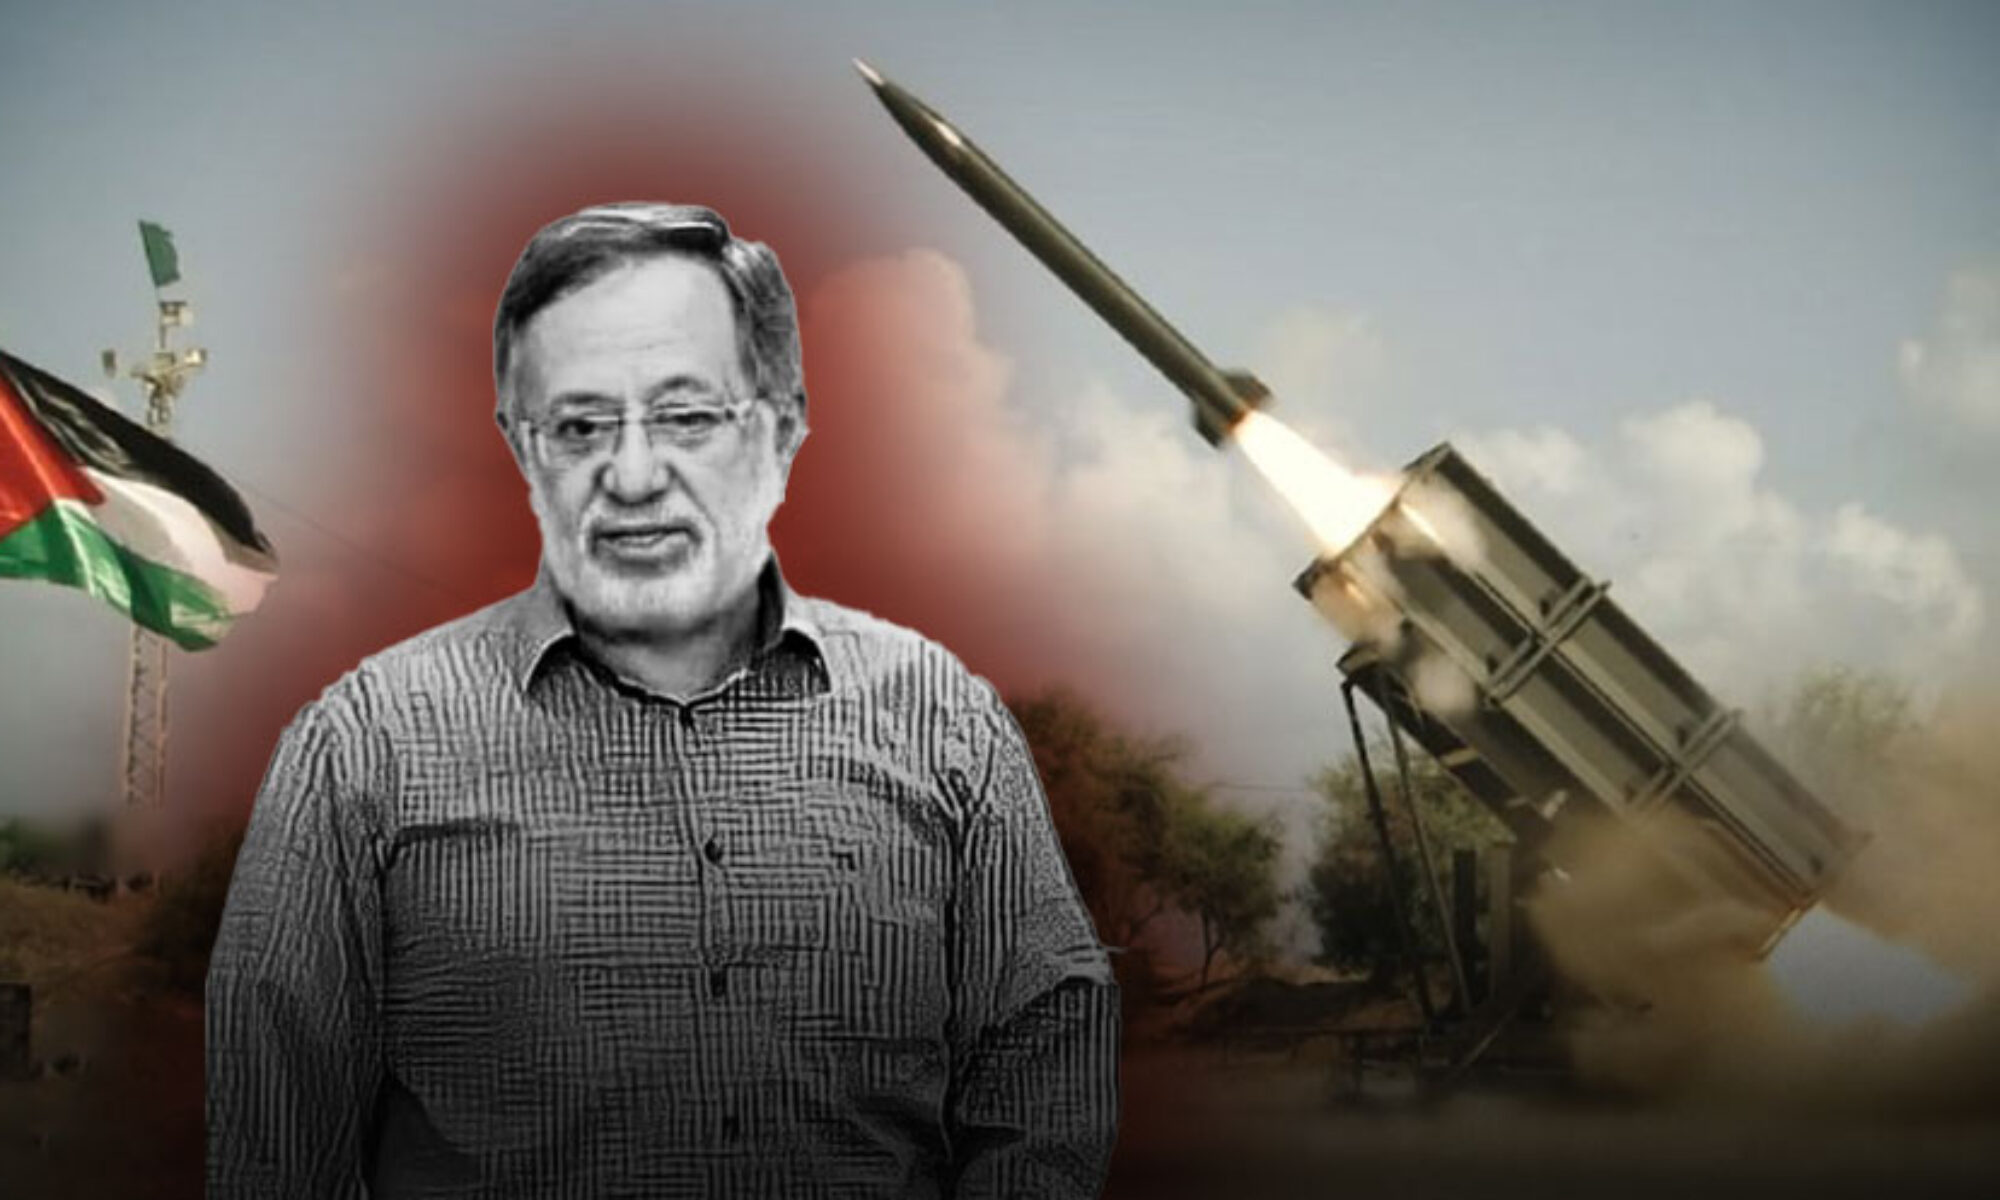 مطوّر الصواريخ الفلسطينية الذي اغتالته إسرائيل.. من هو الدكتور "جمال الزبدة" وكيف تمت عملية اغتياله ؟